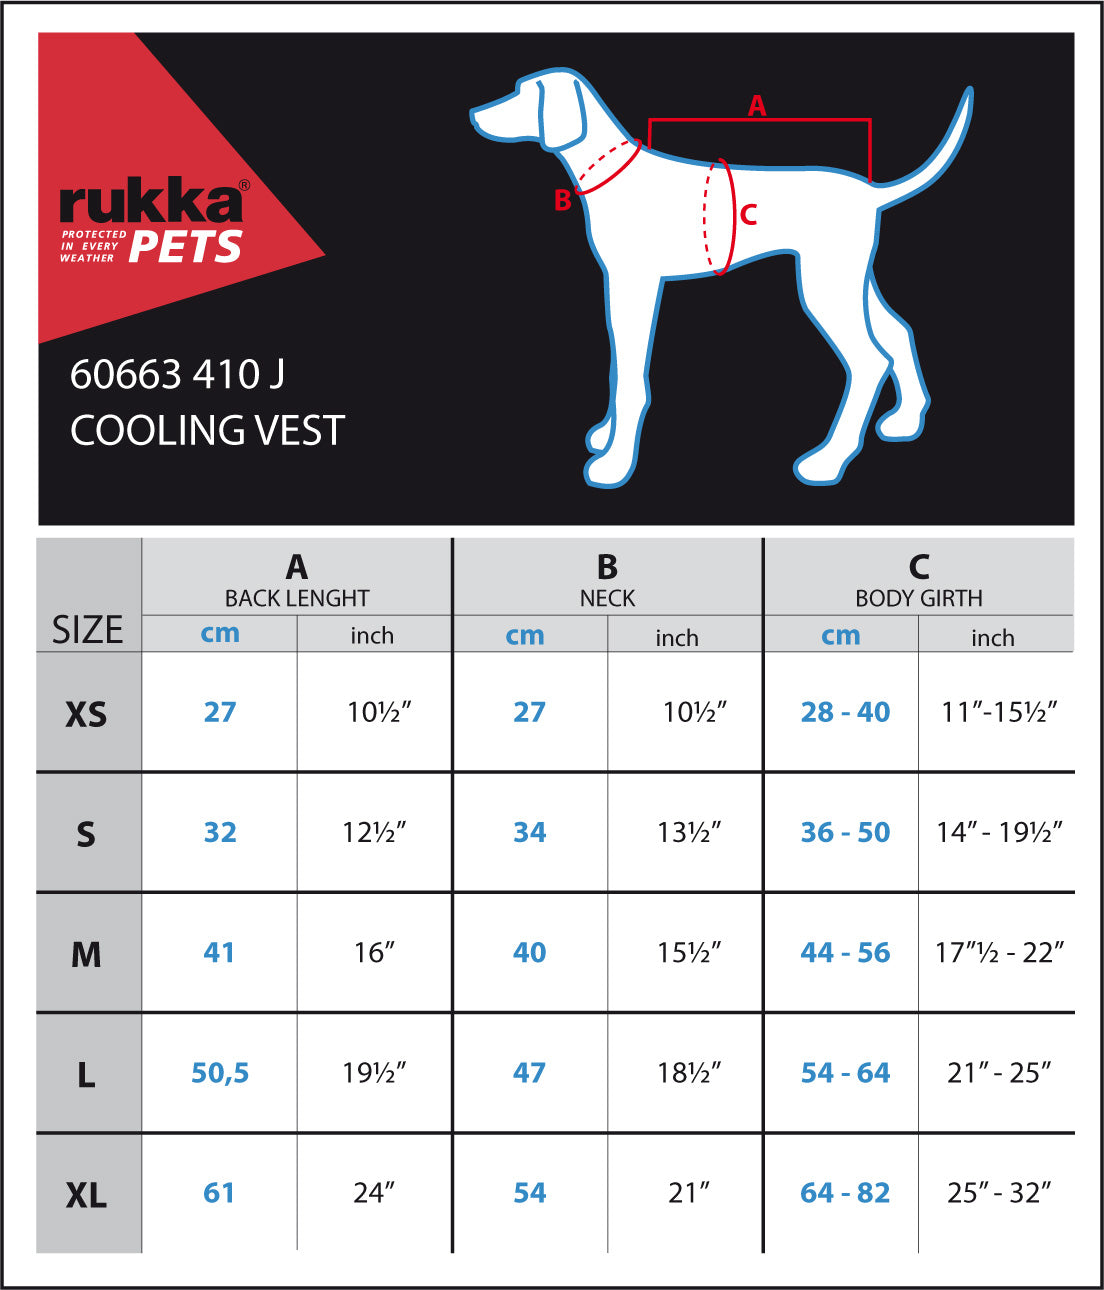 Rukka Pets Cooling Vest